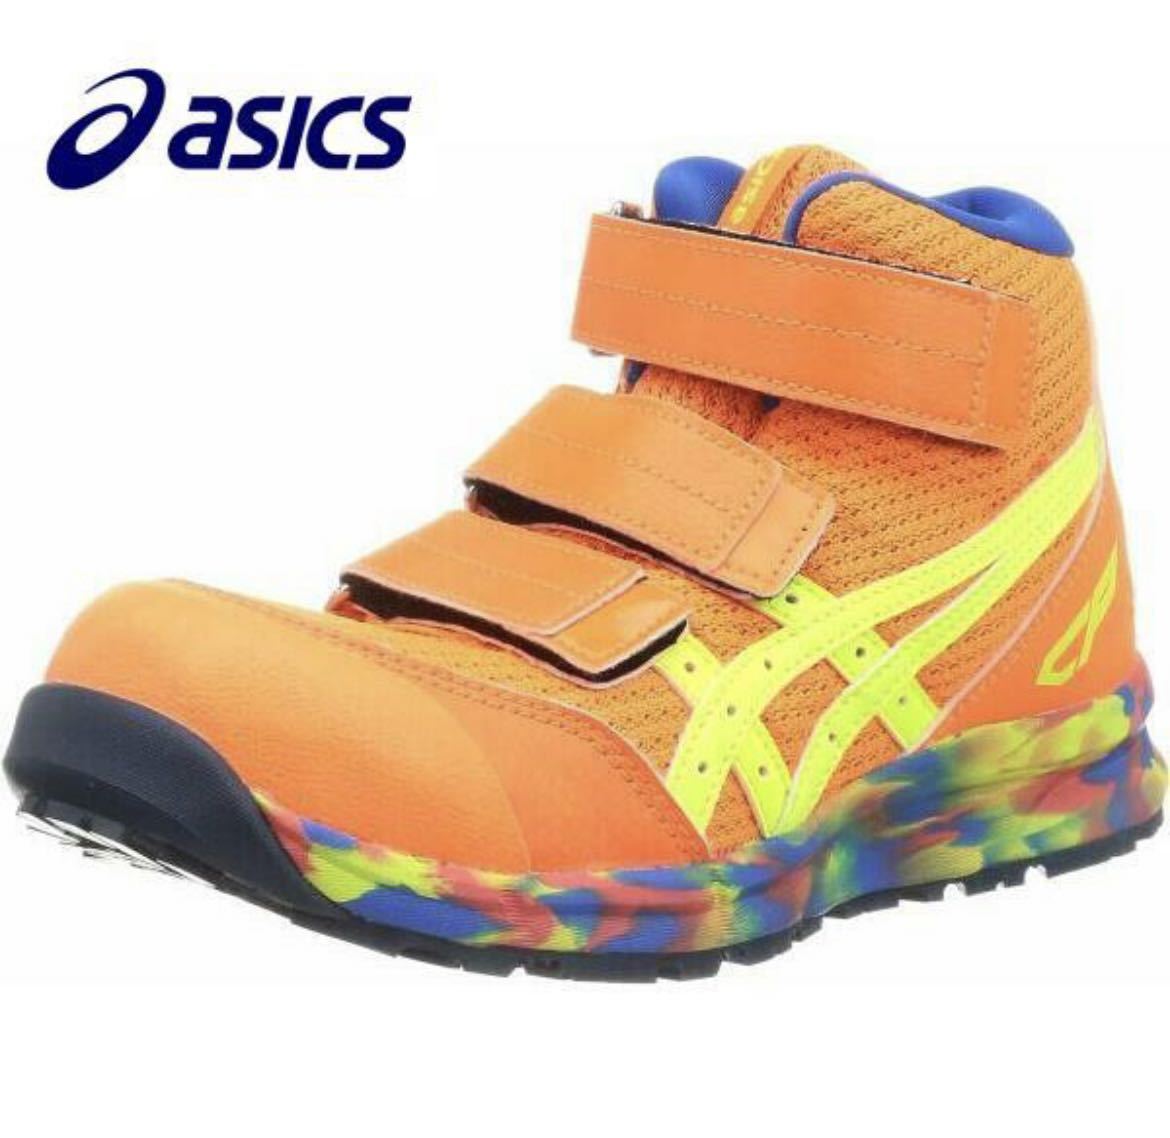  новый товар Asics безопасная обувь wing jobCP203 25.5. ограниченное количество цвет - ikatto текстильная застёжка ③ бесплатная доставка включая доставку 